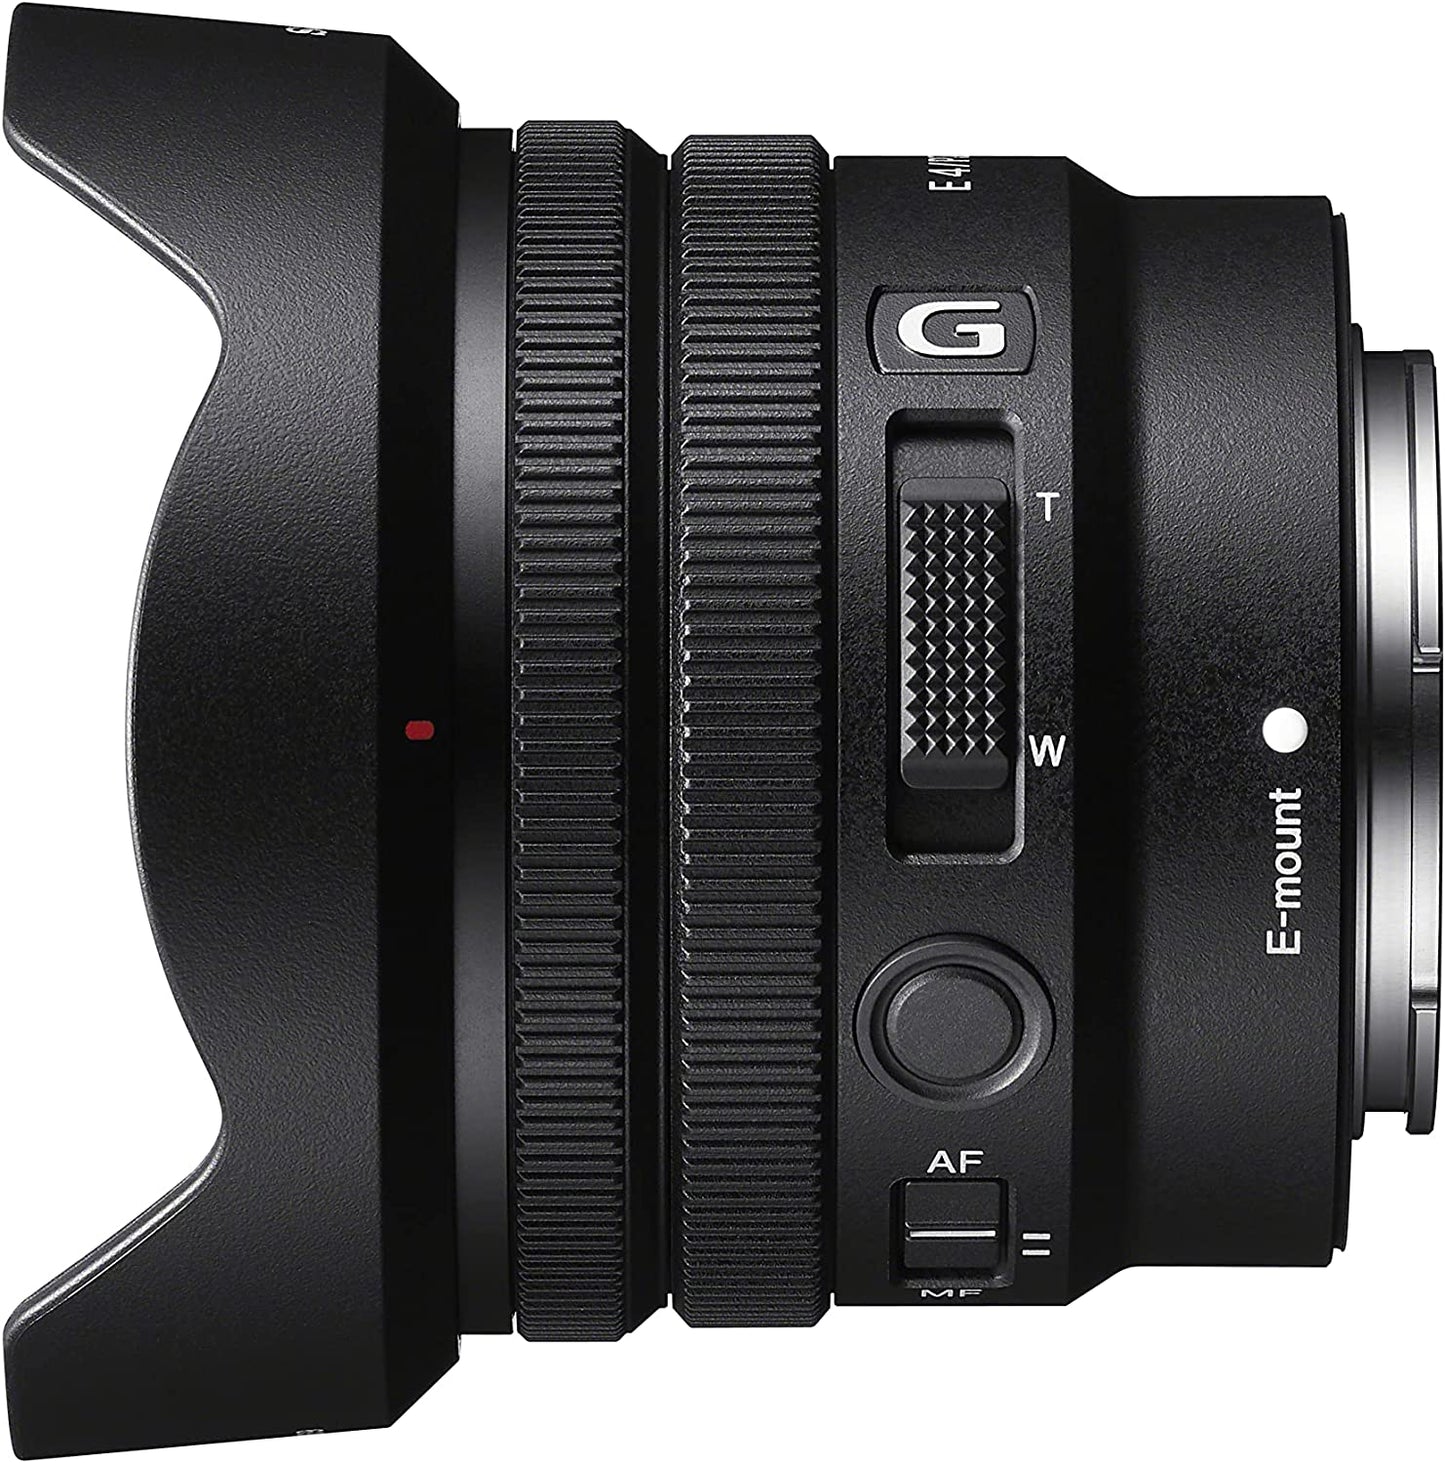 Sony E PZ 10-20mm F4 G APS-C Constant-Aperture Power Zoom G Lens - SELP1020G